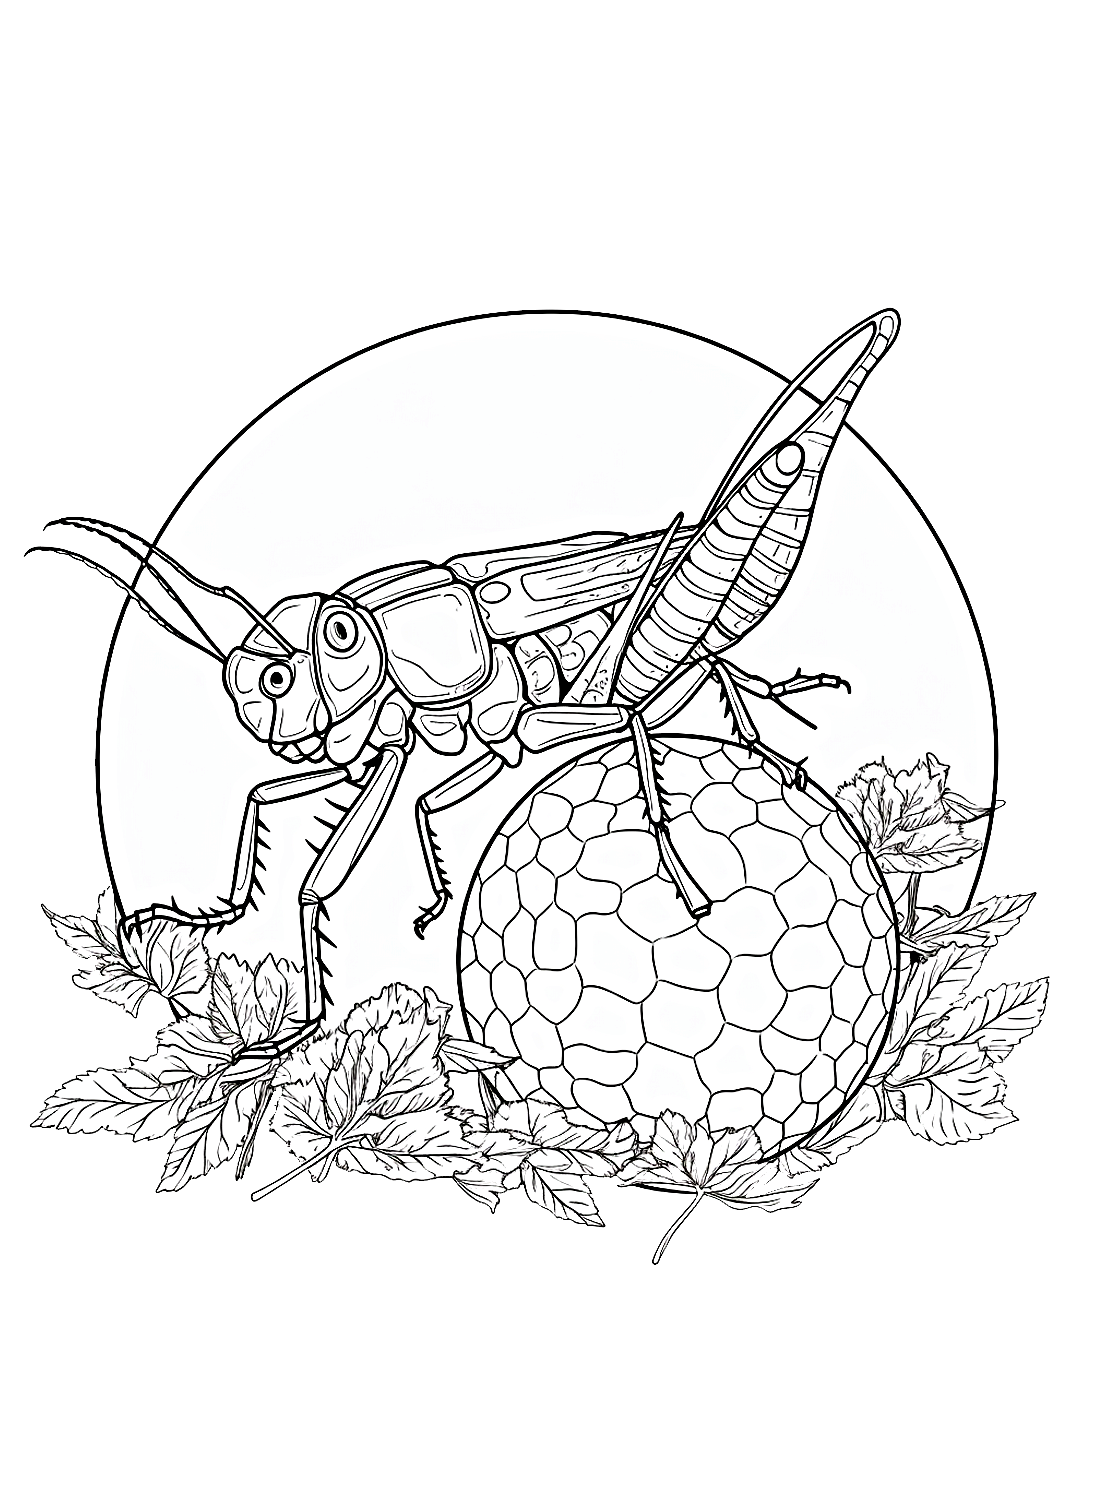 Los Locust y un globo gigante de Locust.